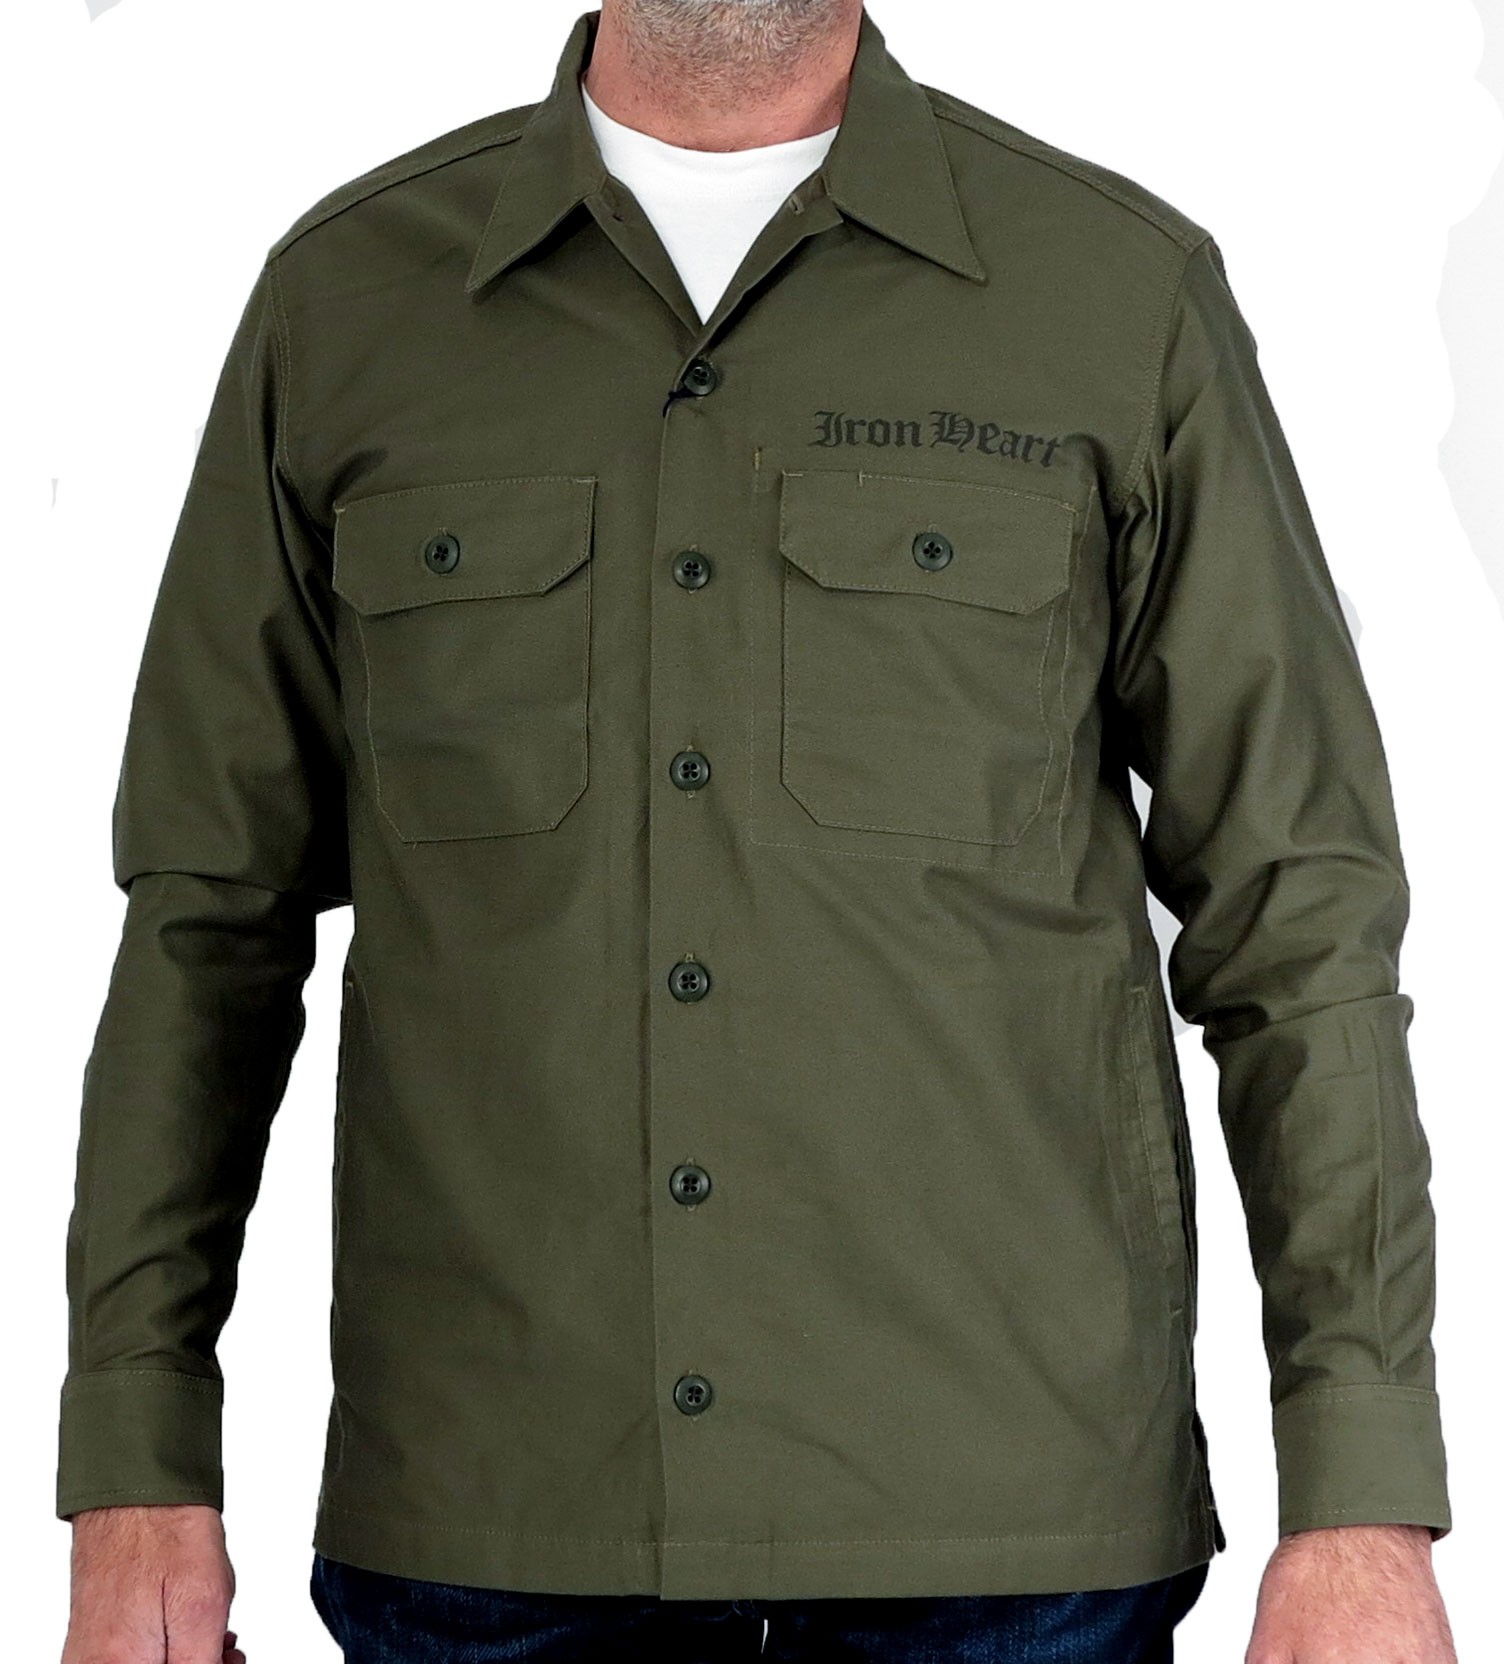 Iron Heart Heavy Cotton Satin Military Shirts - Olive and Khaki